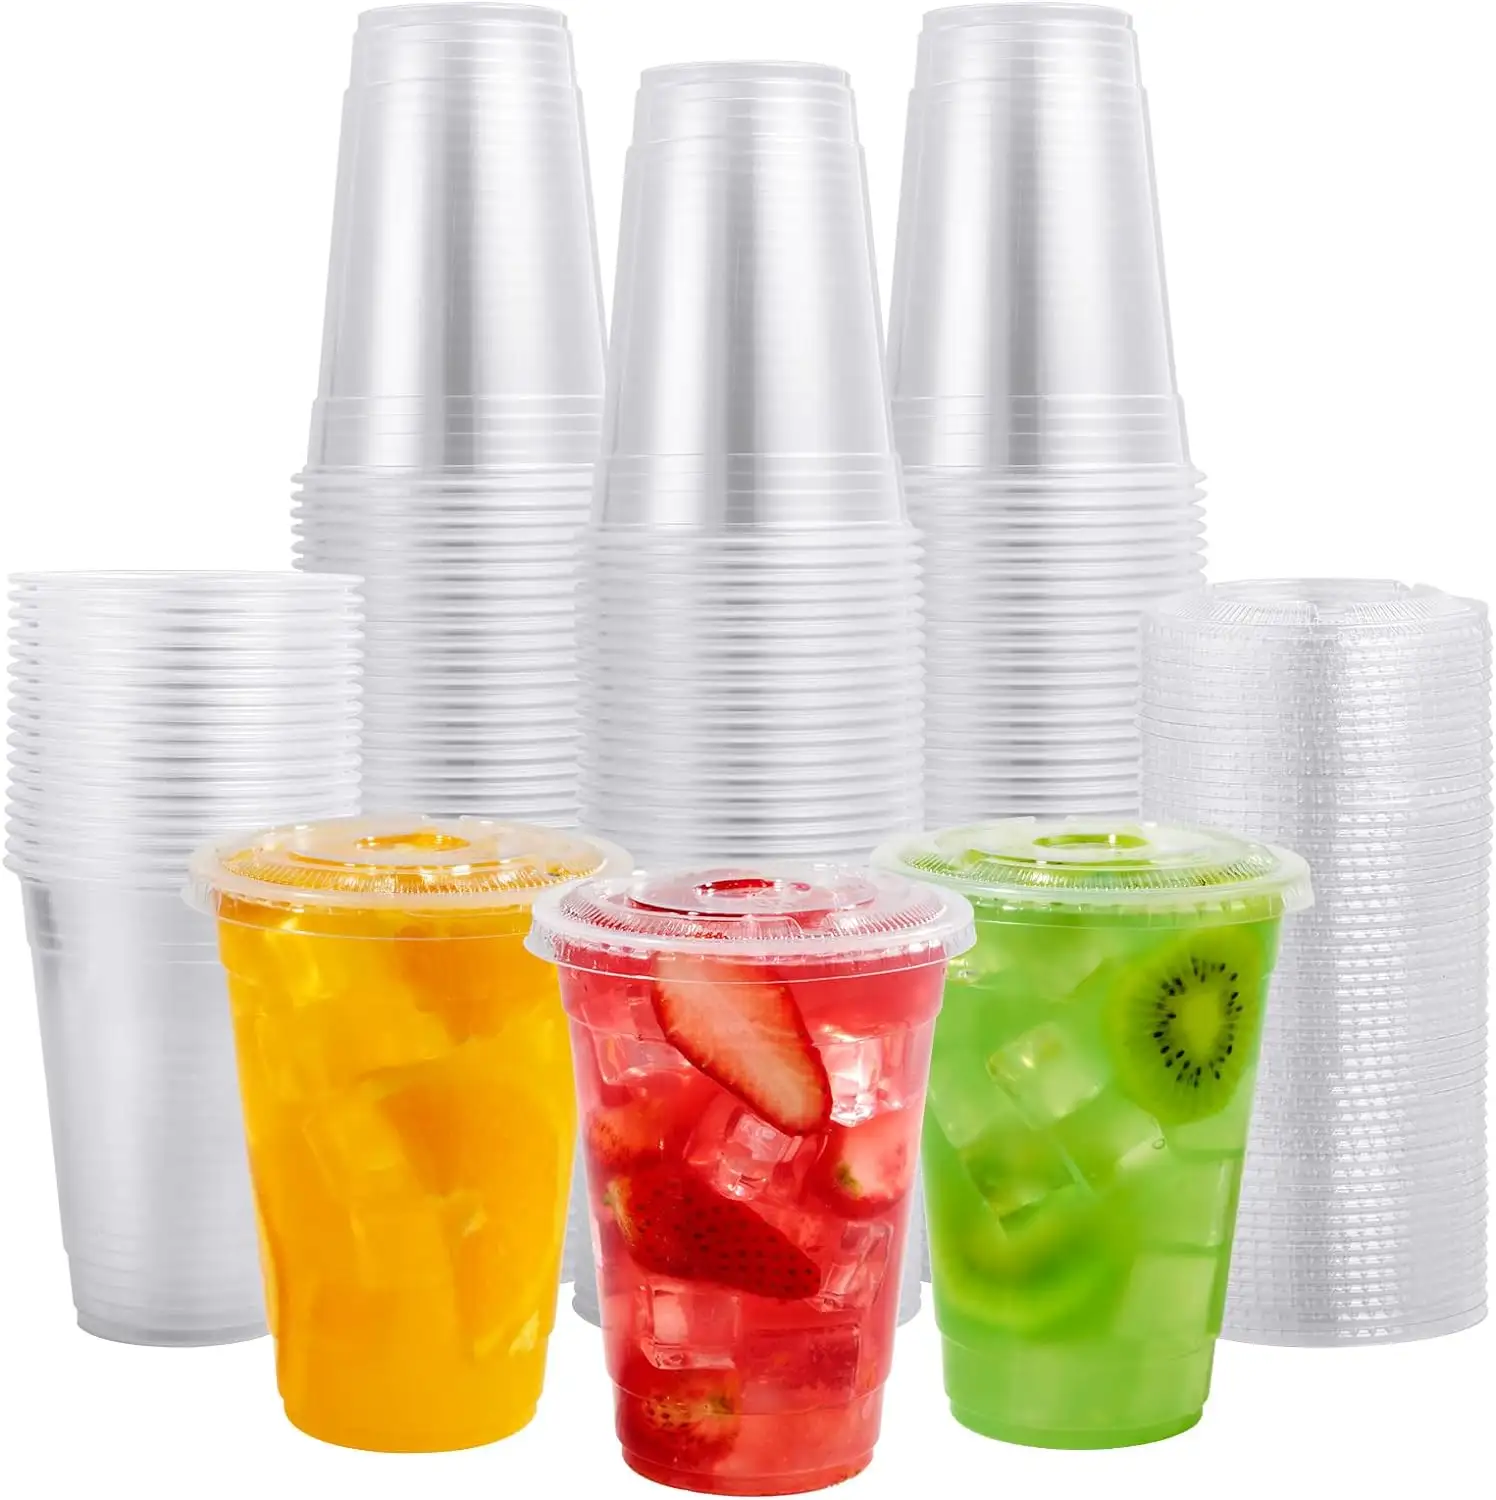 Personalización personalizada 16oz PET transparente desechable Boba Bubble Milk Tea vasos de plástico para fiestas bebidas